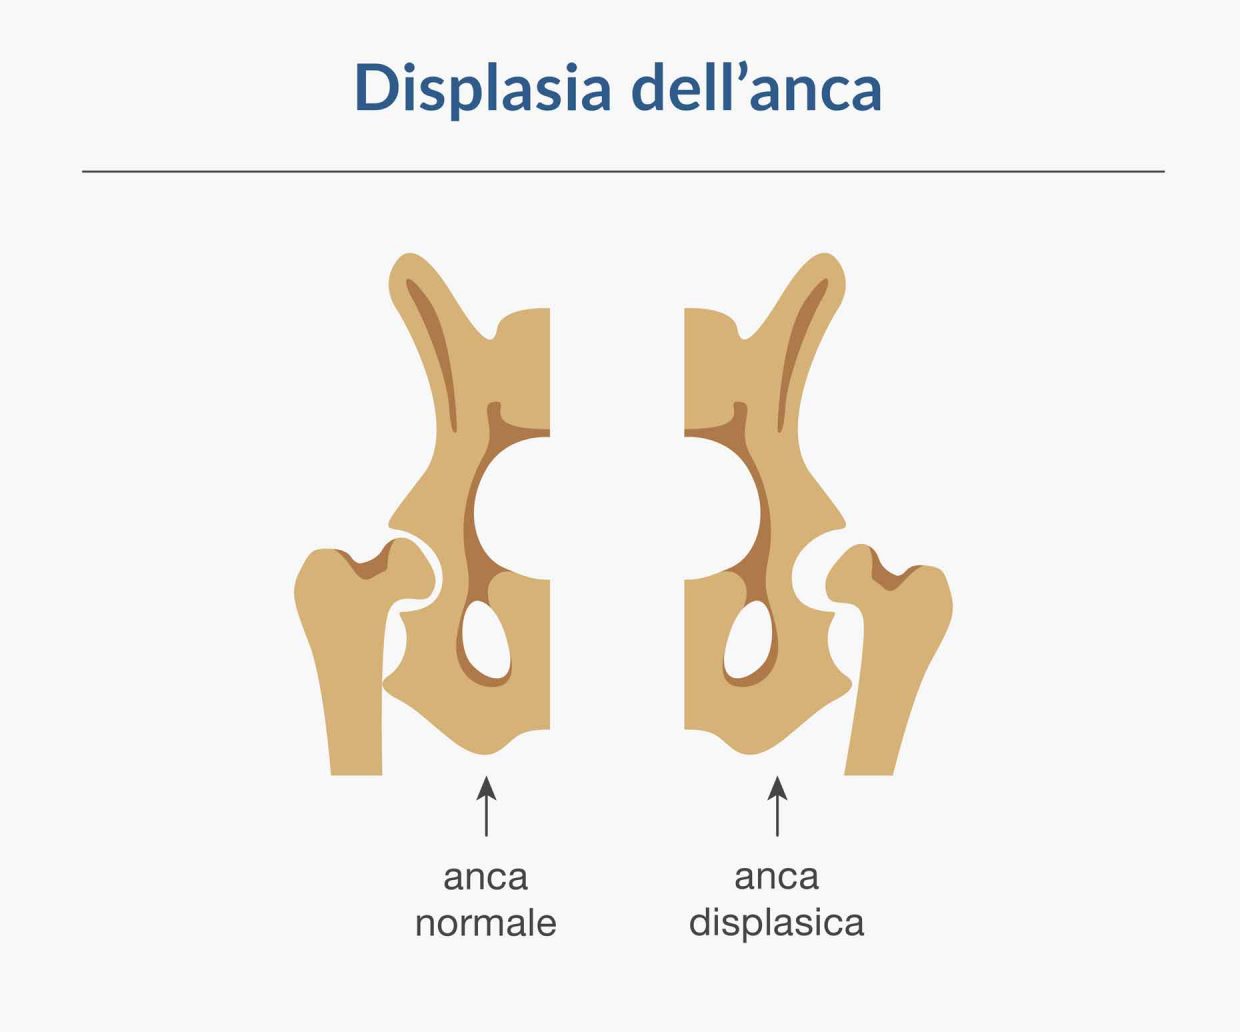 immagine che mostra la differenza delle giunzioni ossee nel caso di anca normale e anca displasica